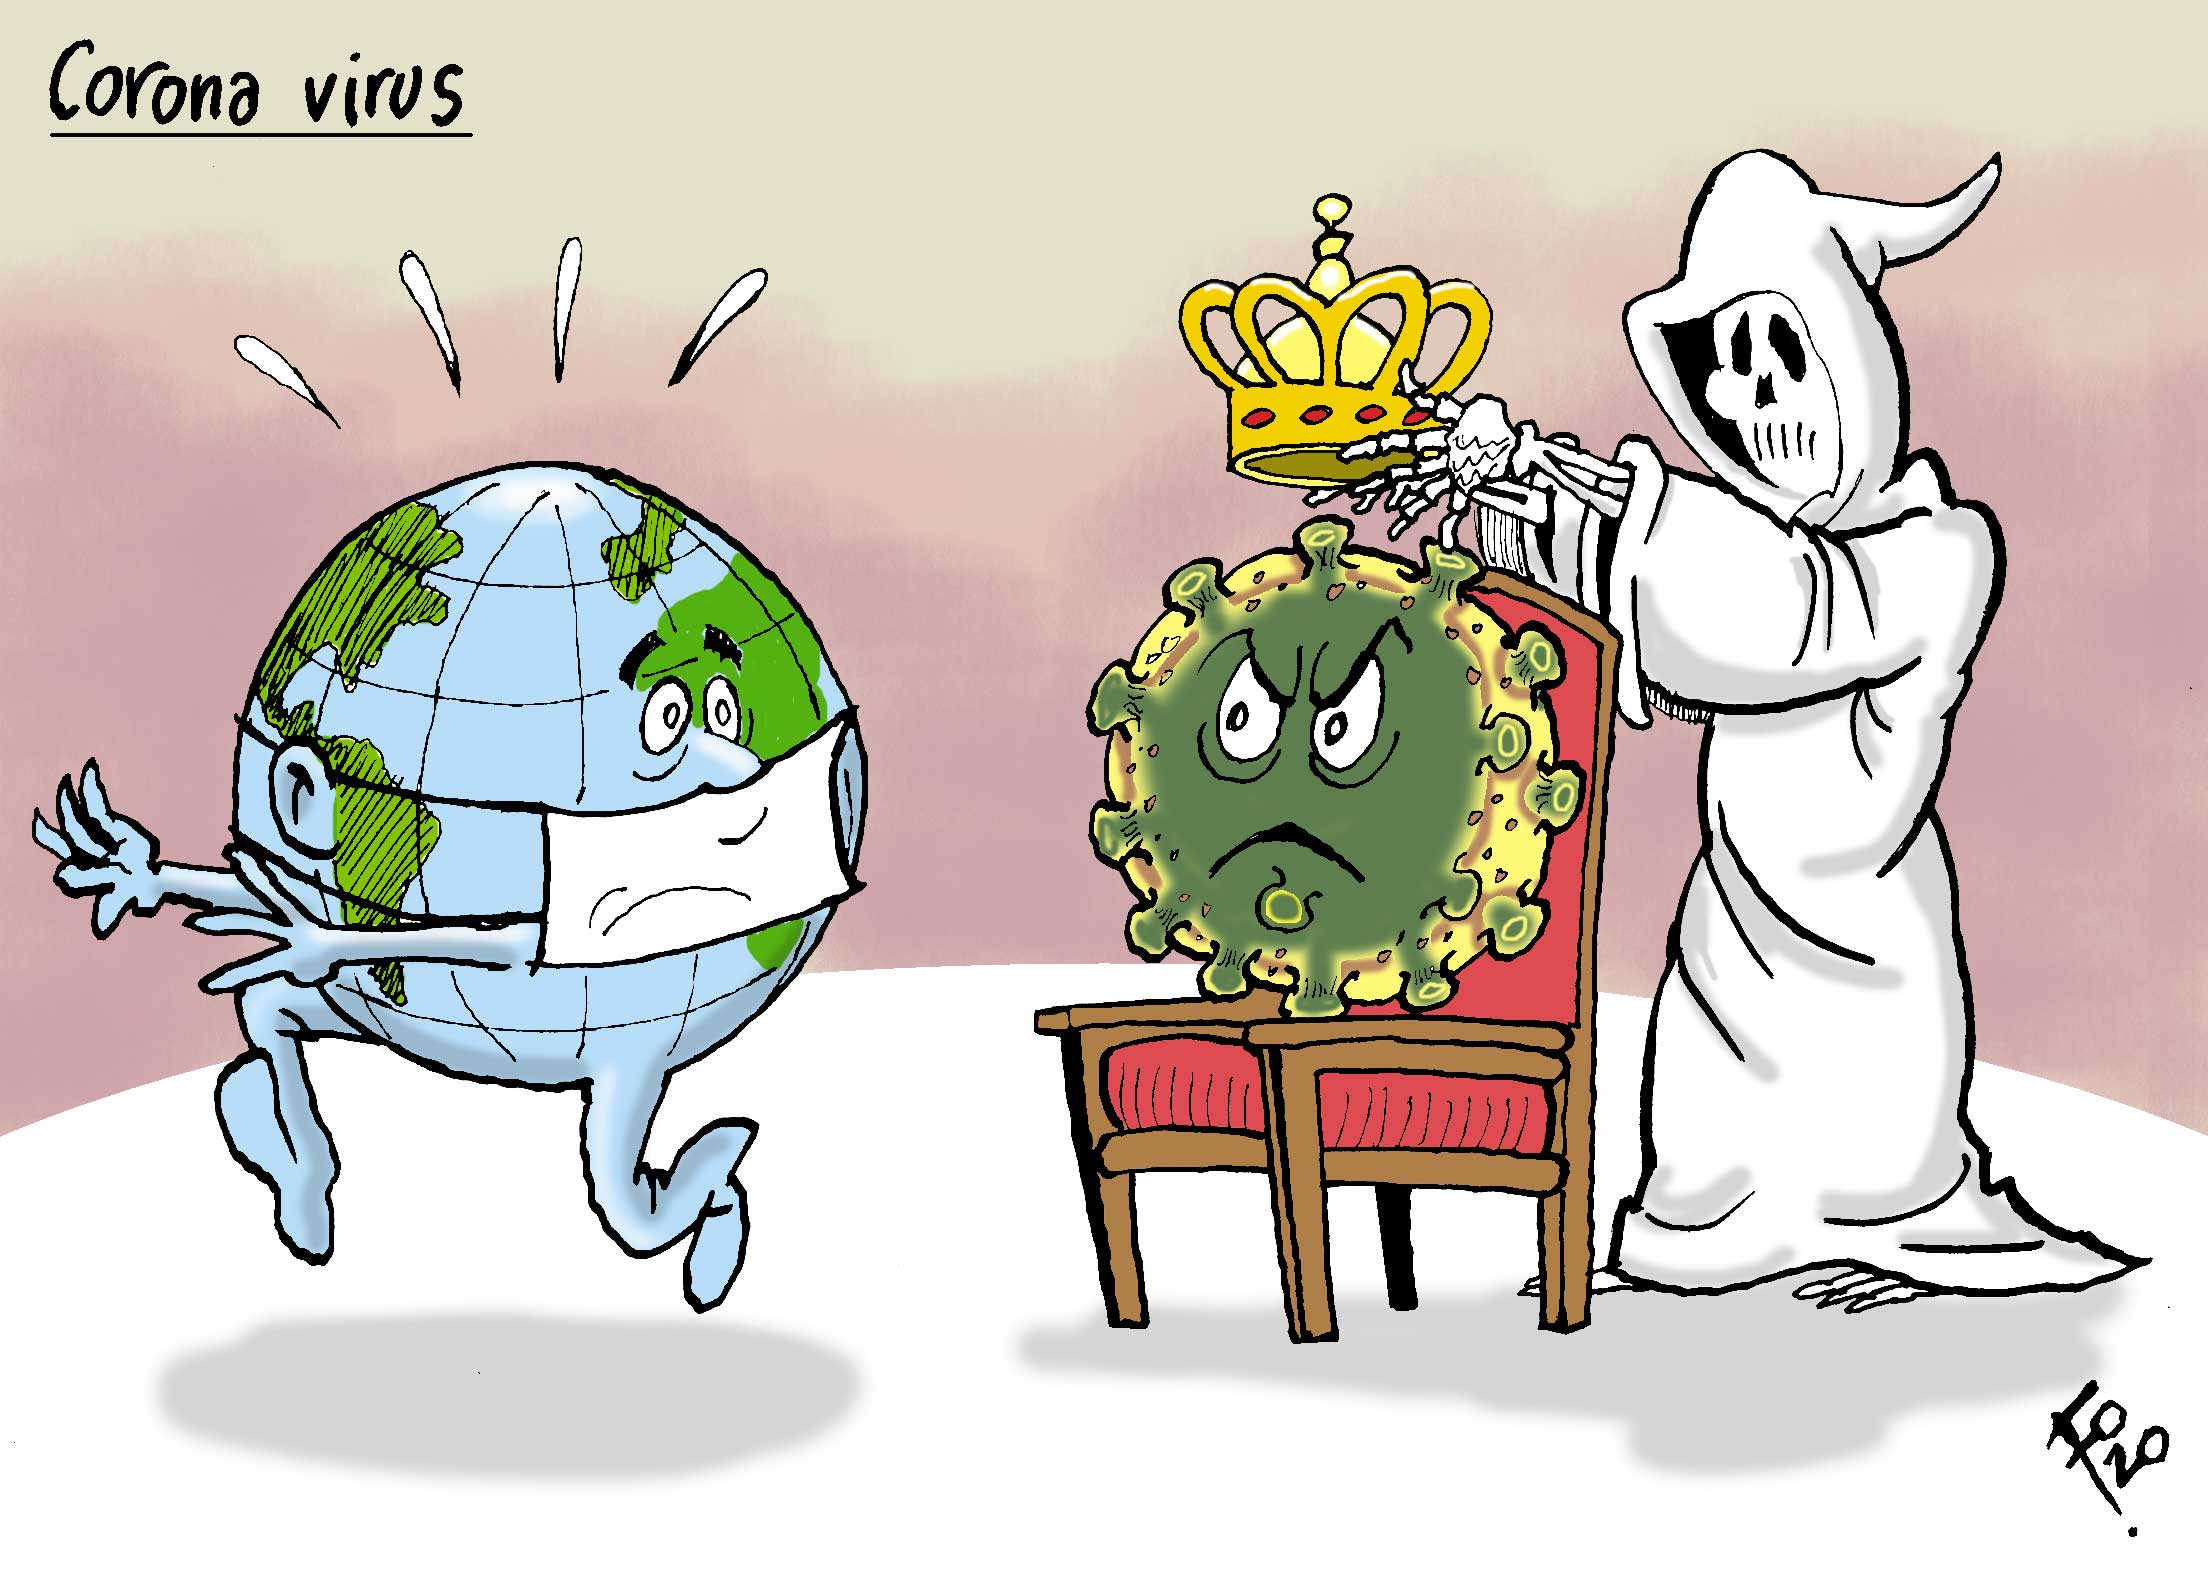 תוצאת תמונה עבור virus con corona caricatura